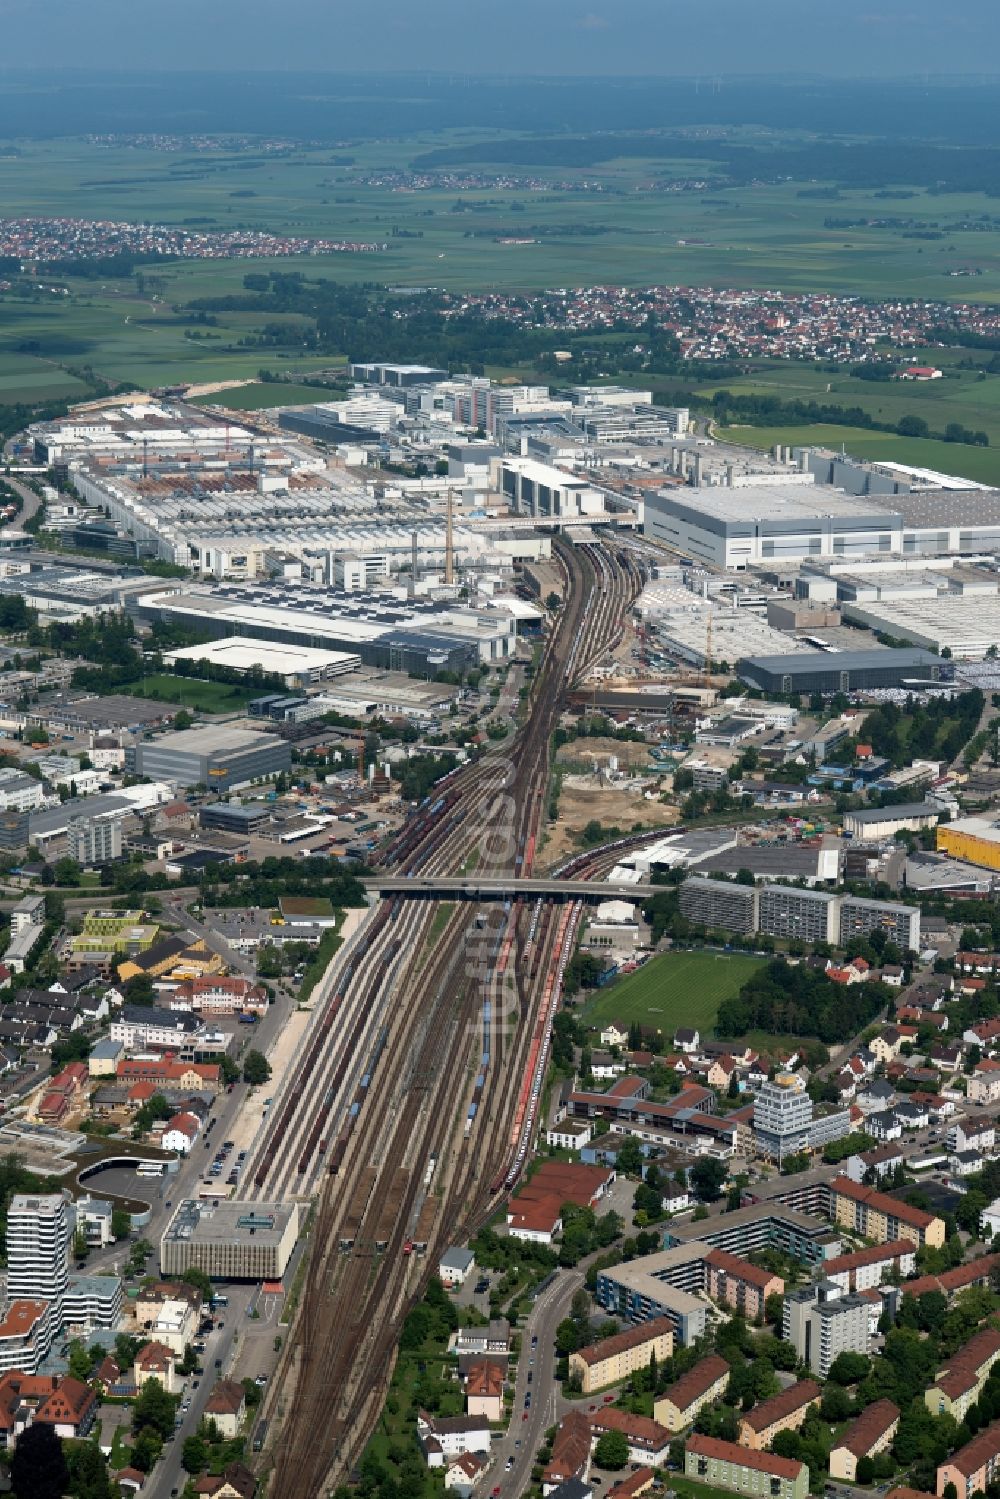 Luftbild Ingolstadt - Rangierbahnhof und Güterbahnhof der Deutschen Bahn in Ingolstadt im Bundesland Bayern, Deutschland